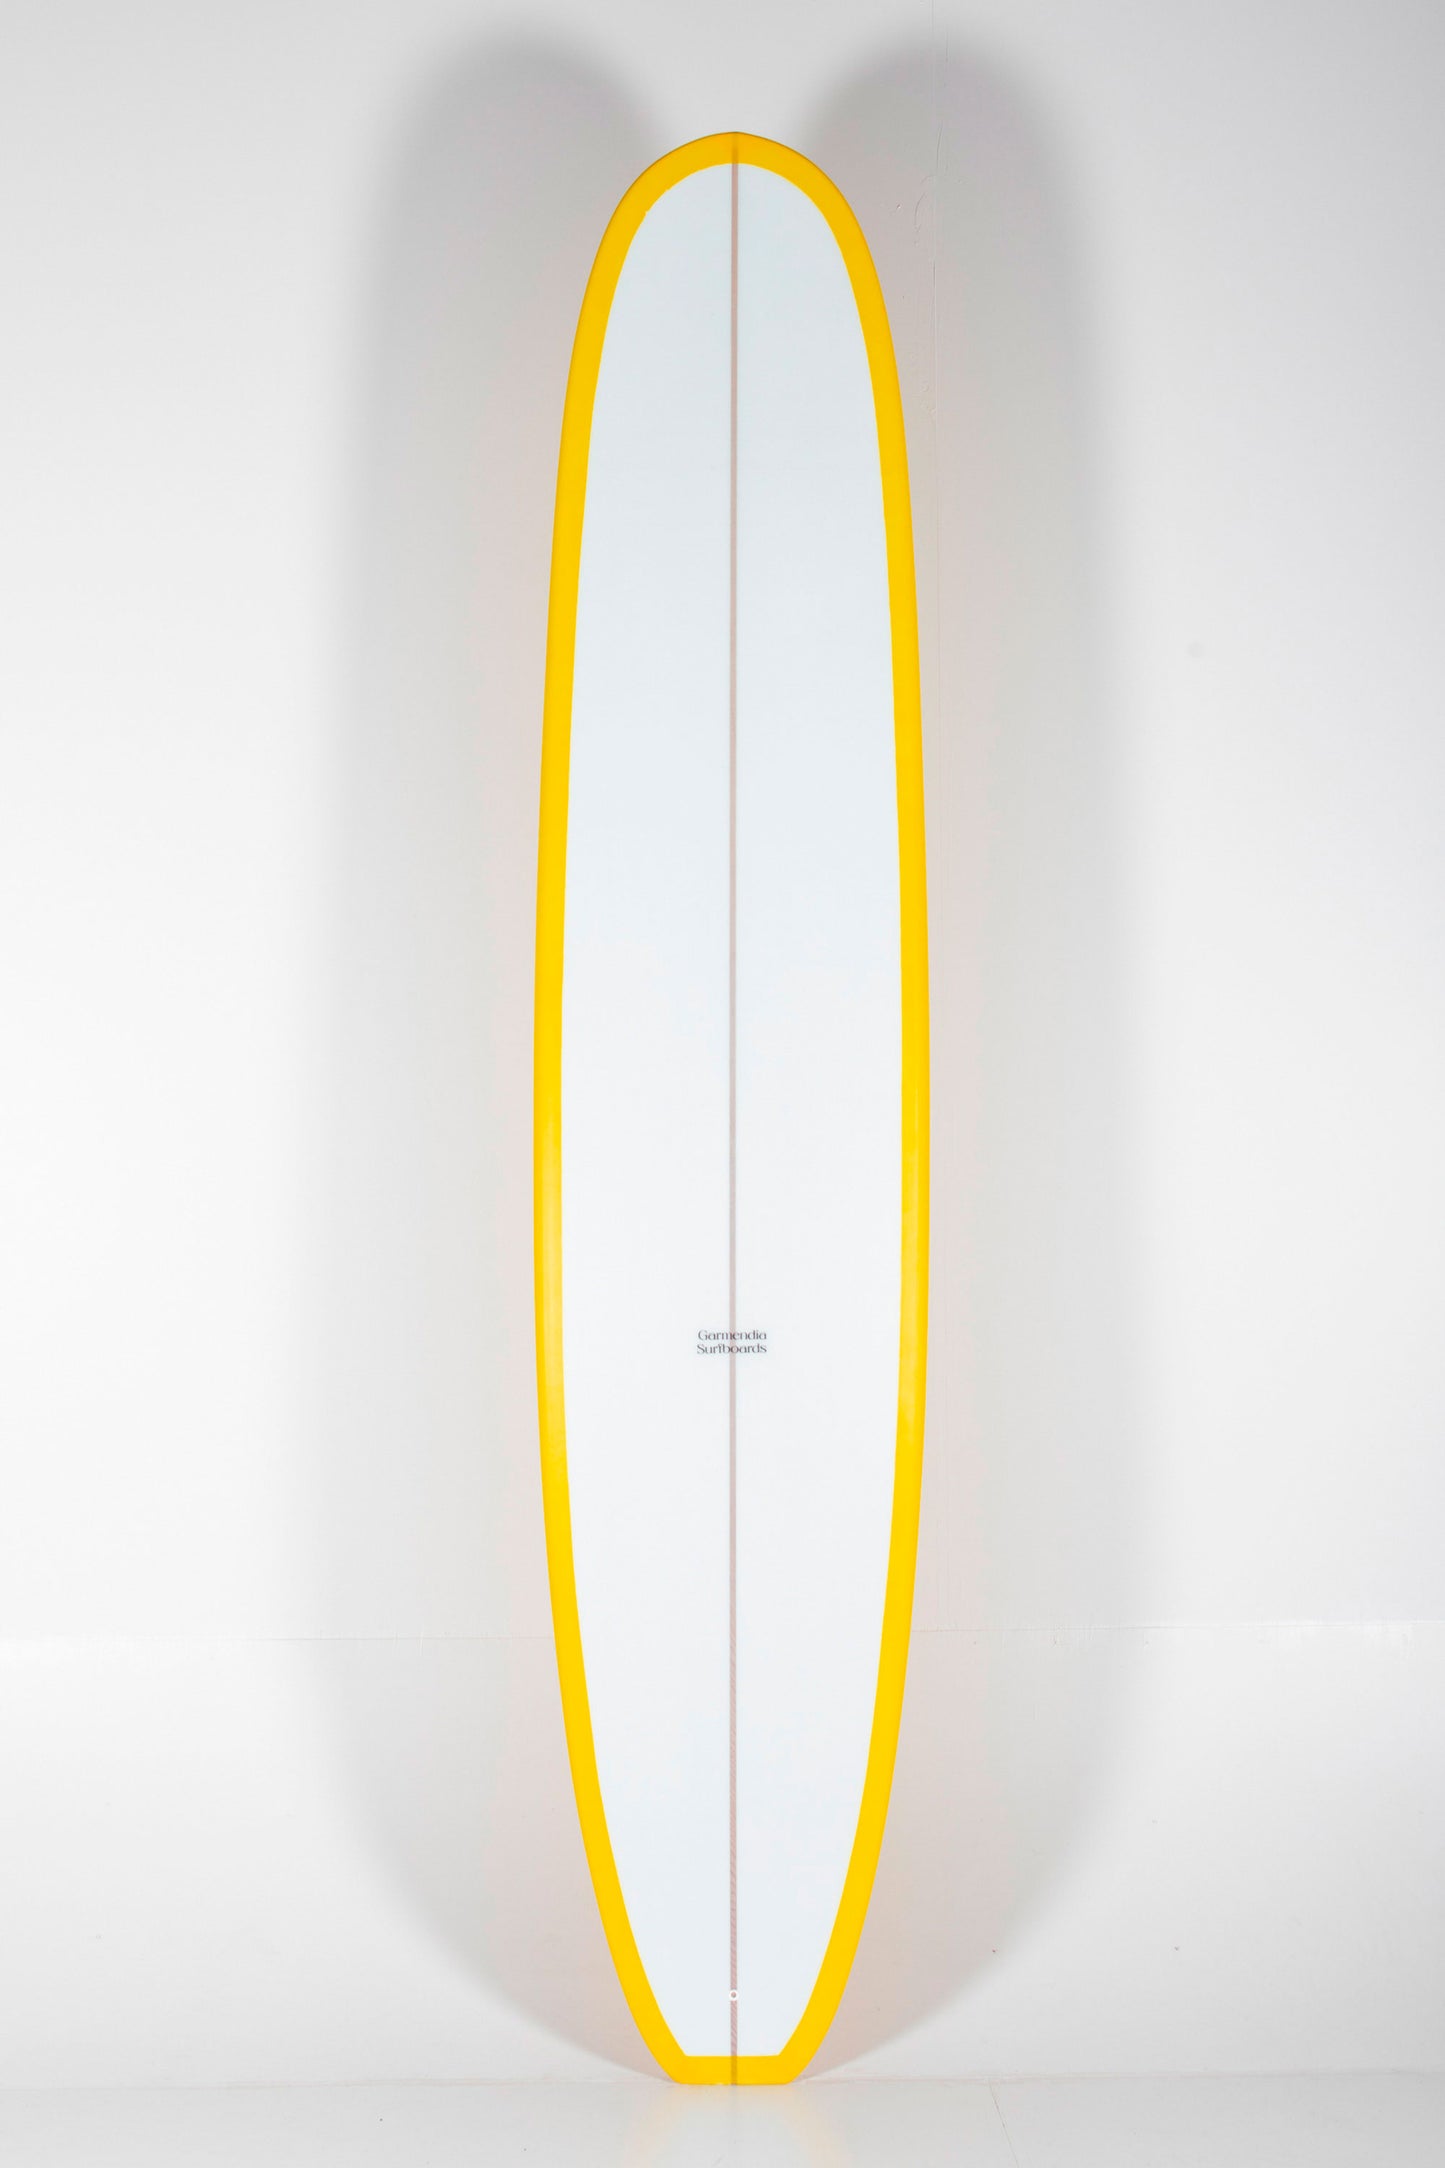 Garmendia Surfboards - NOSERIDER - 9'4" x 23 x 3 - Ref.NOSERIDER94NOV at Pukas Surf Shop